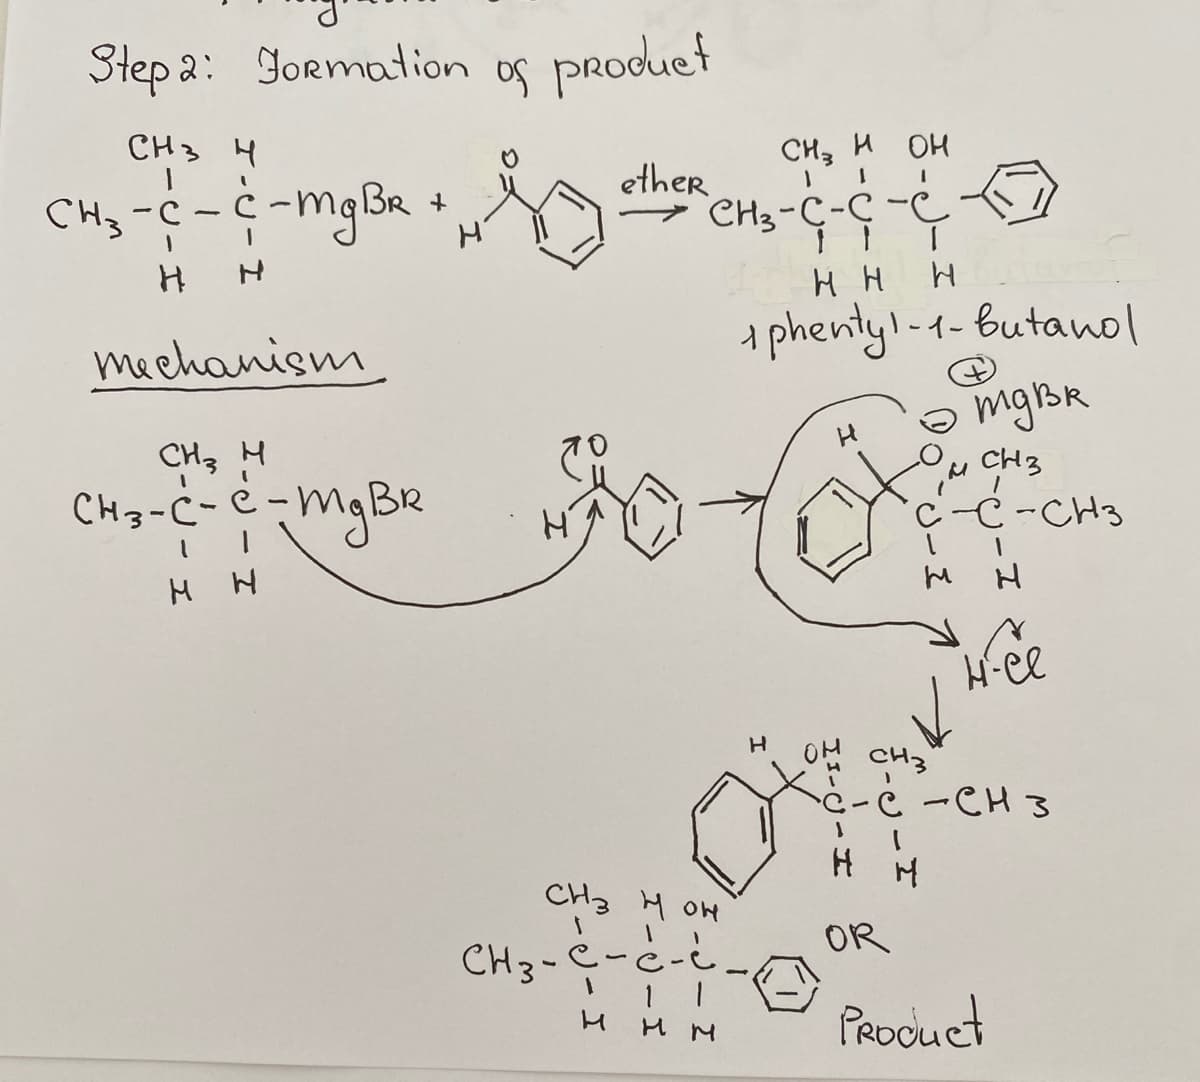 Step 2: Formation
СН3 Ң
CH3 -C- C-mg BR
+
I
H
Н
mechanism
СН3 н
CH3 -C- C-mg BR
н н
of product
CH3 н он
I
СН3-С-С-с
нн
ether
сHз нон
CH3-C-C
н
1 |
нм
I
H
1 phenty1-1-butanol
н
отдва
OR
~ CH 3
-С-СН3
н
н-се
СН3
- е - енз
н
Product